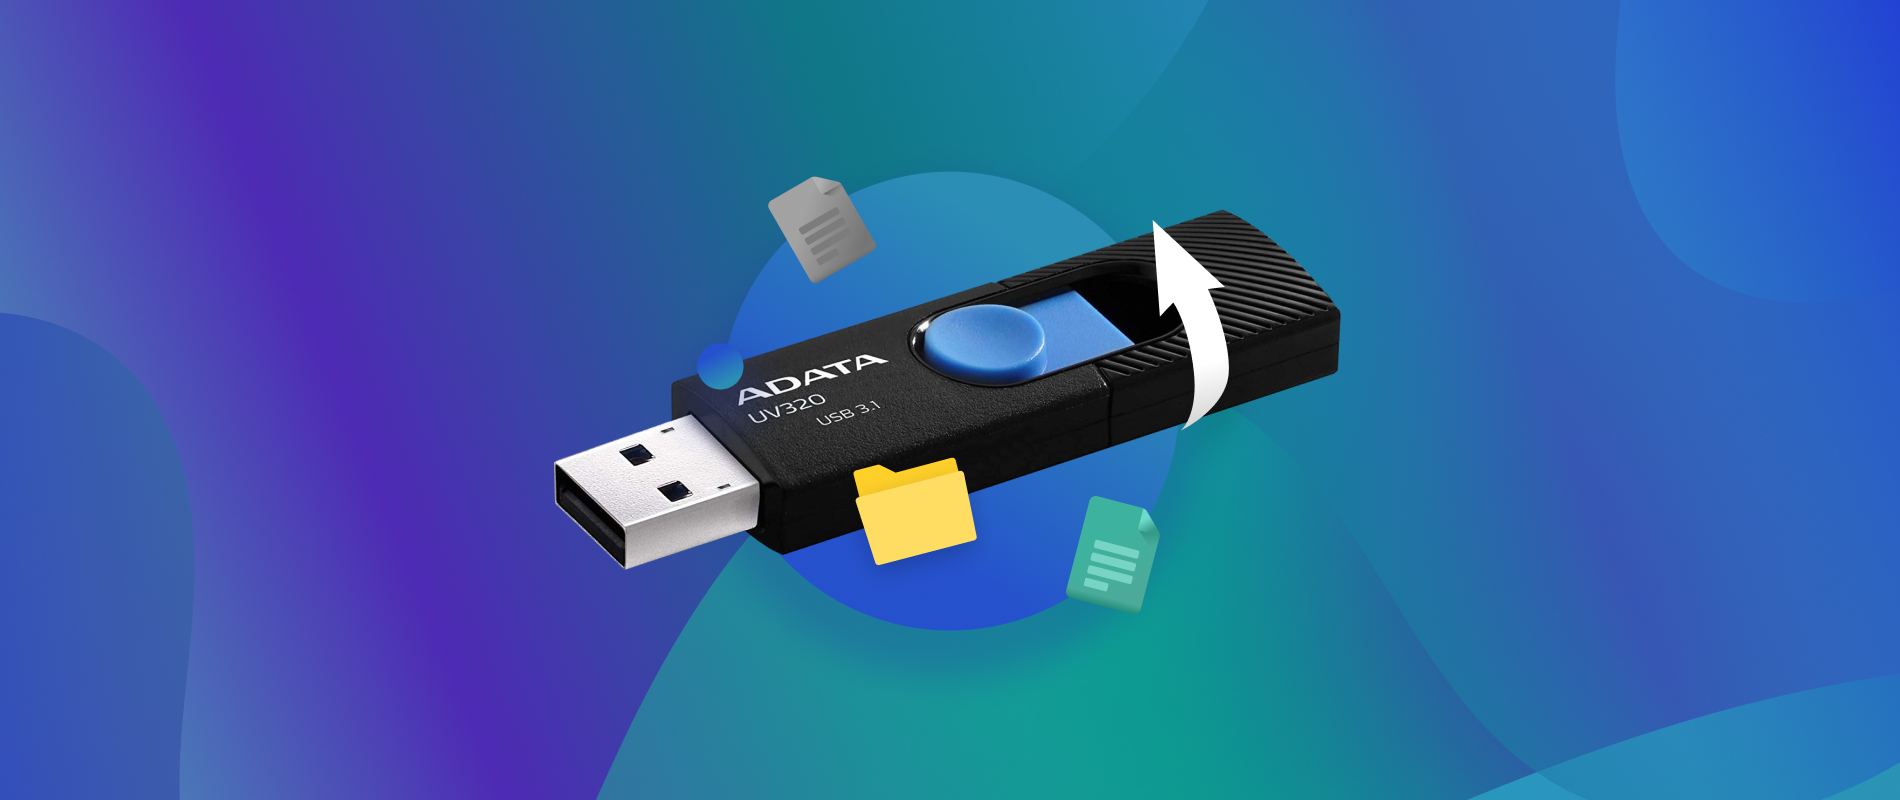 Adata USB Flash Drive Best 5 Adata USB Recovery/Repair Tools